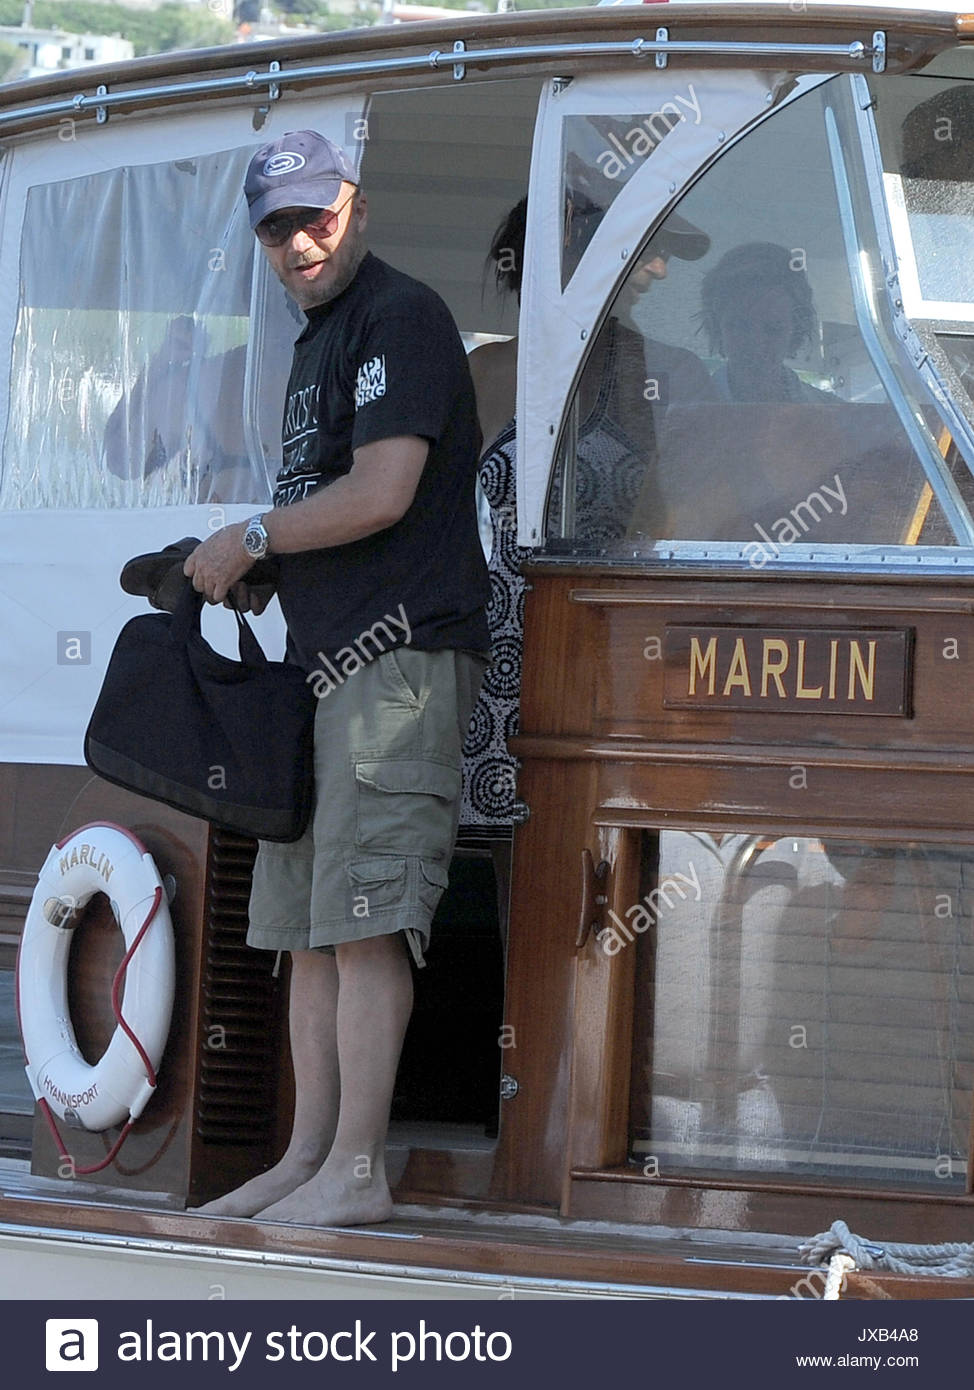 Kerry kennedy cuomo boat